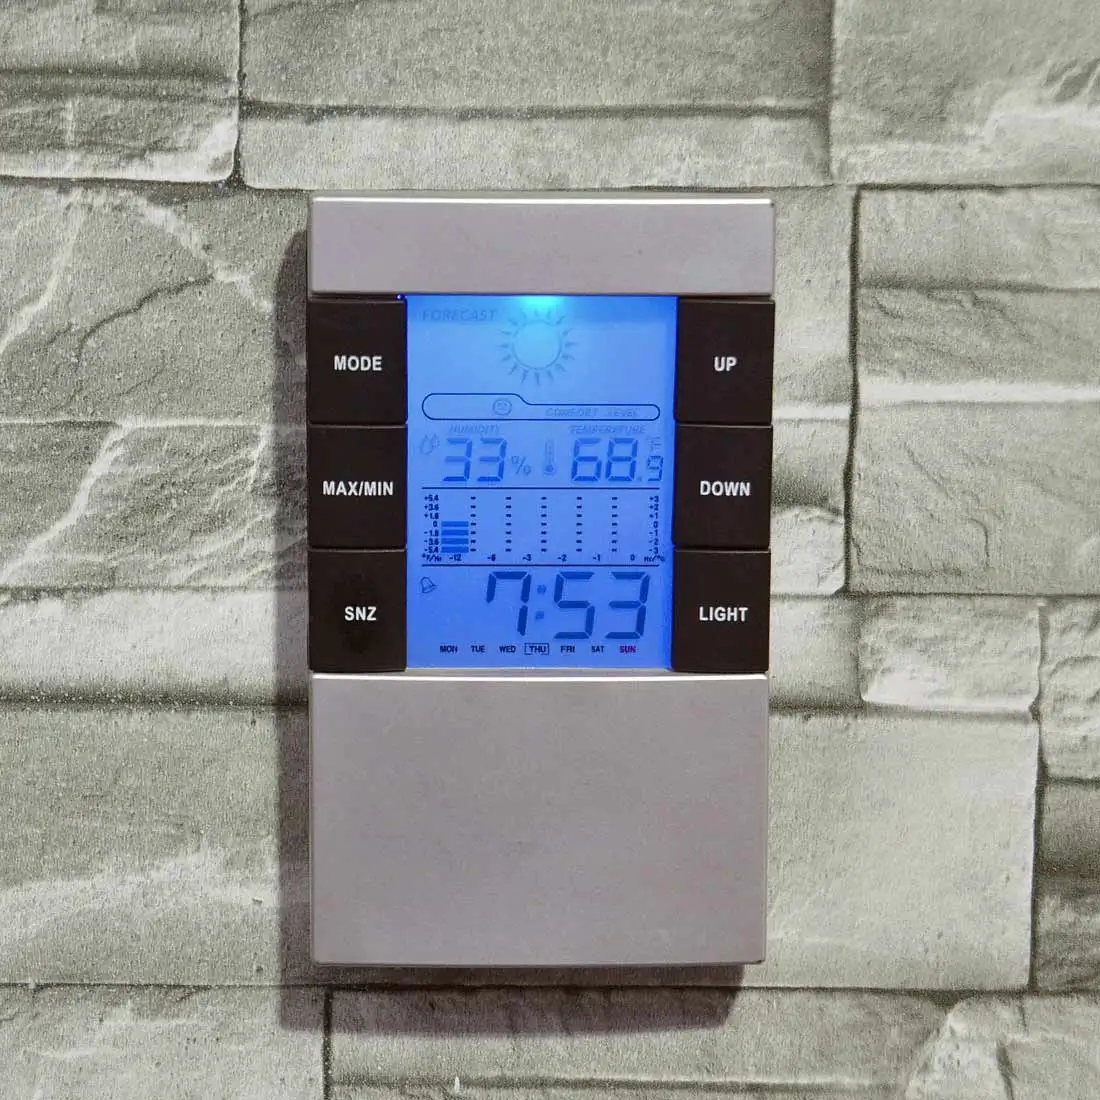 Барометр, цифровой термометр, календарь, монитор влажности, для дома, для погоды, ЖК-подсветка, термометр температуры